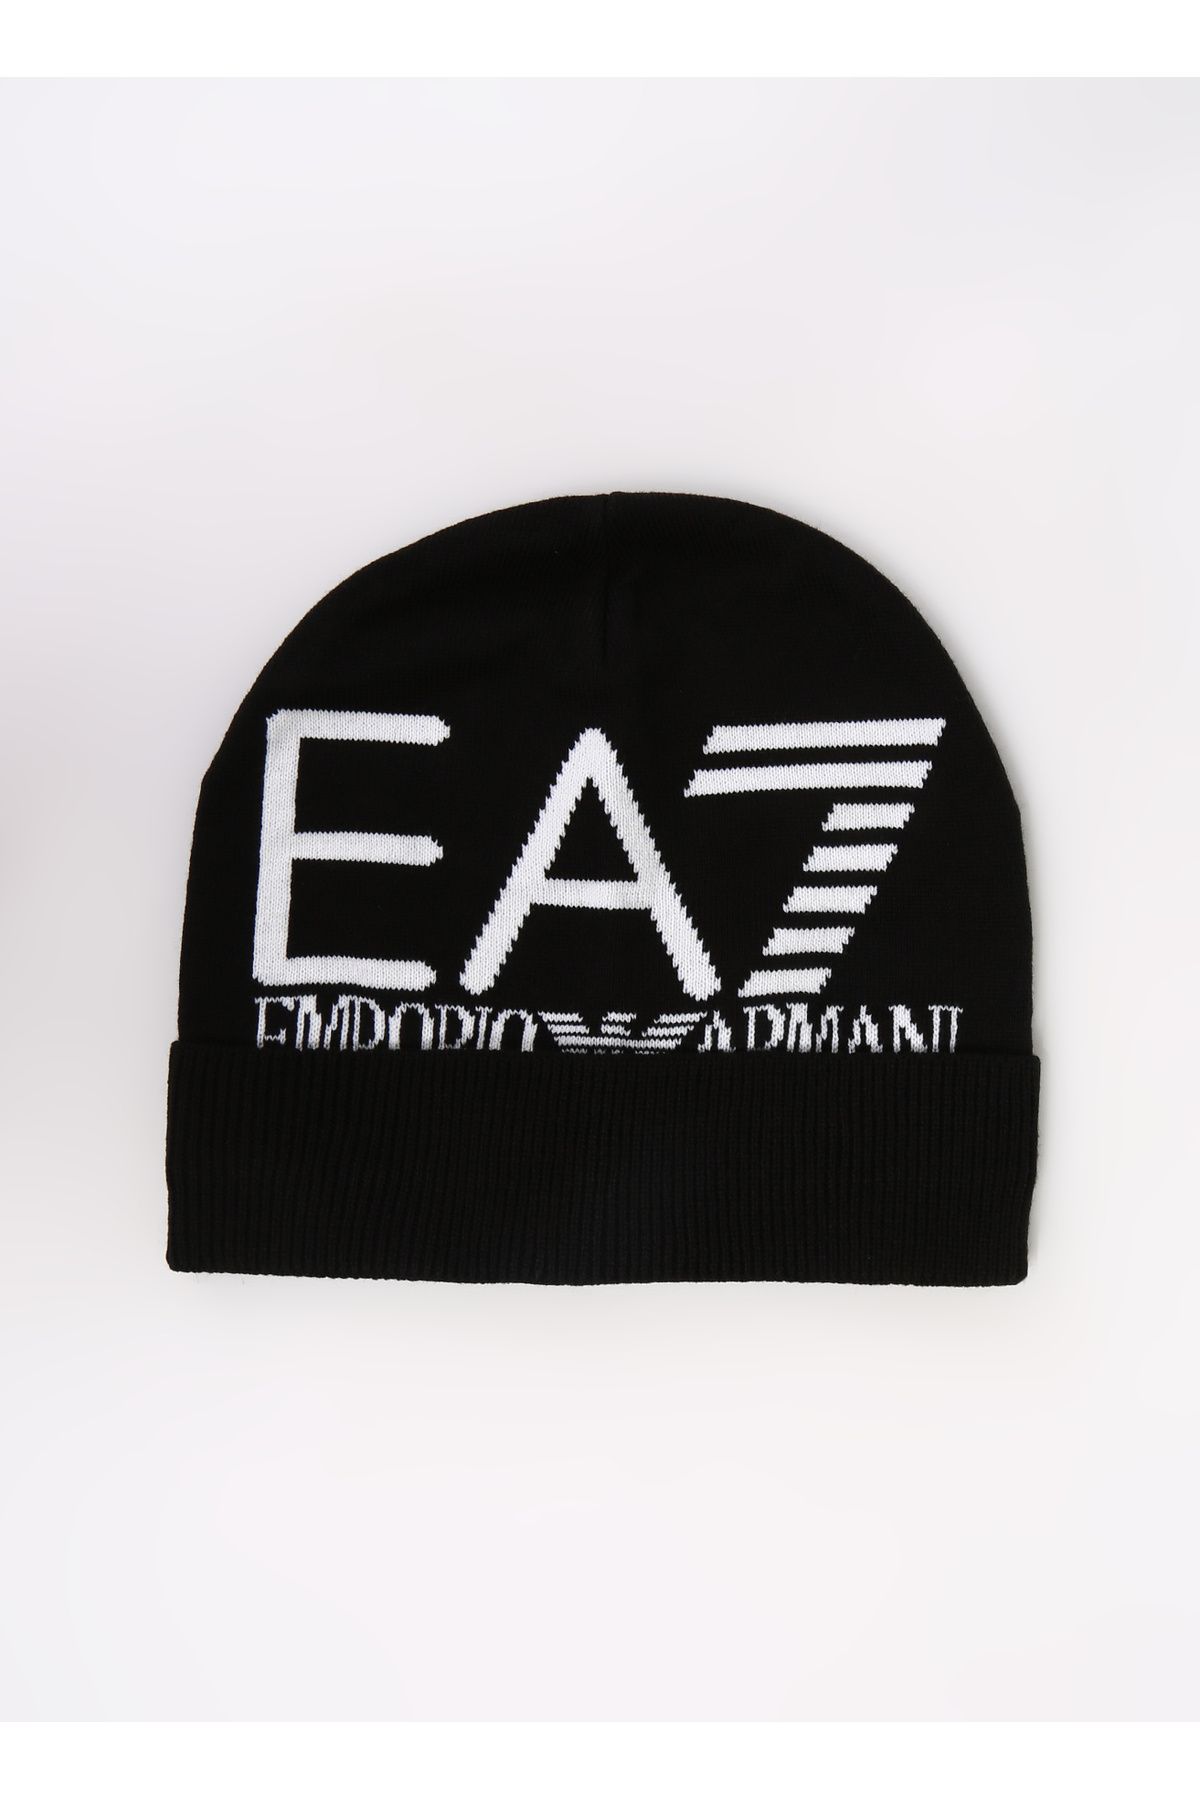 EA7 Siyah Erkek Şapka 240127CC20000121